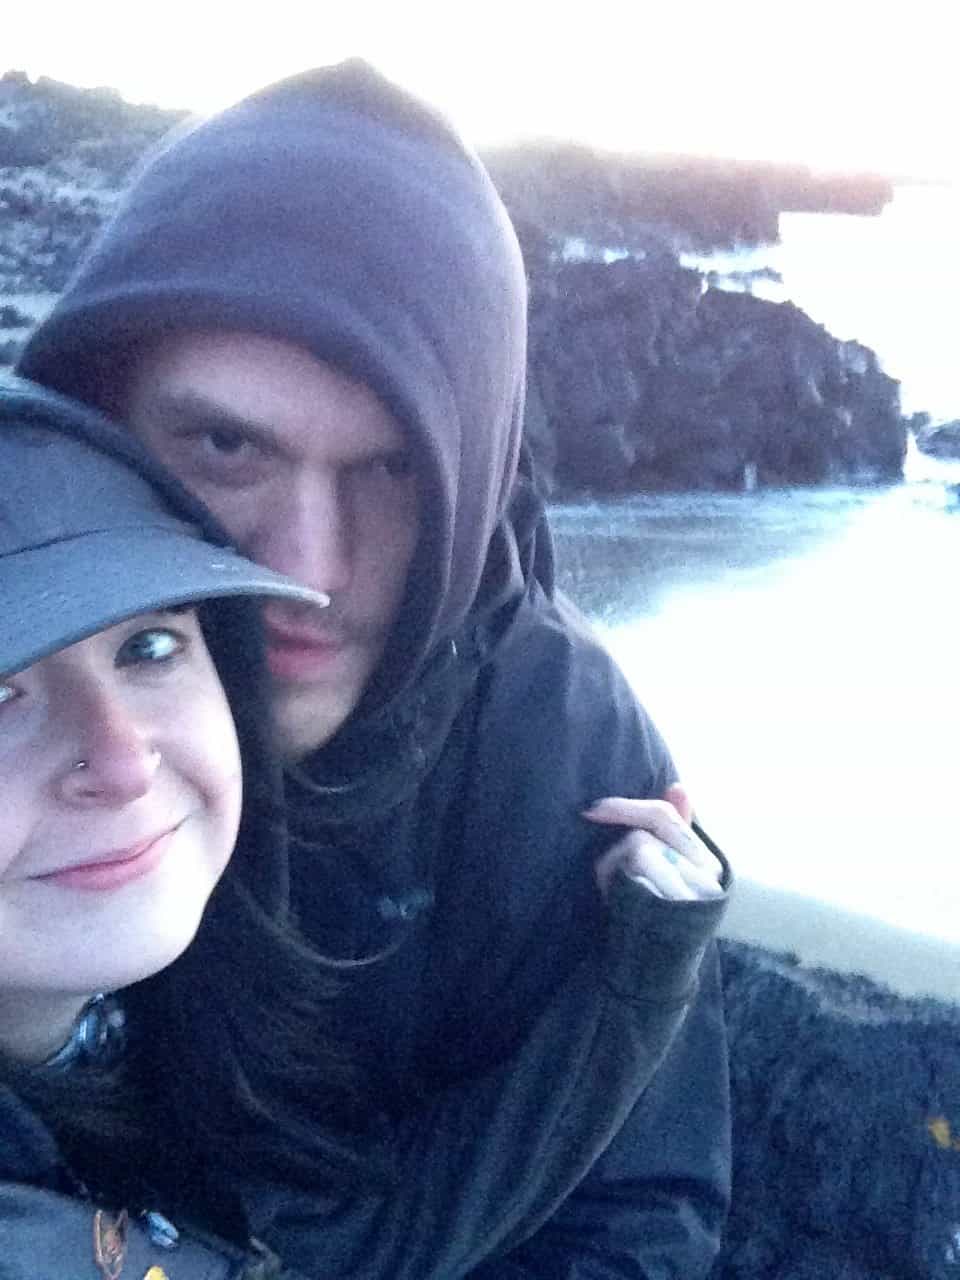 Kelly & Pat on their camper van trip in Iceland